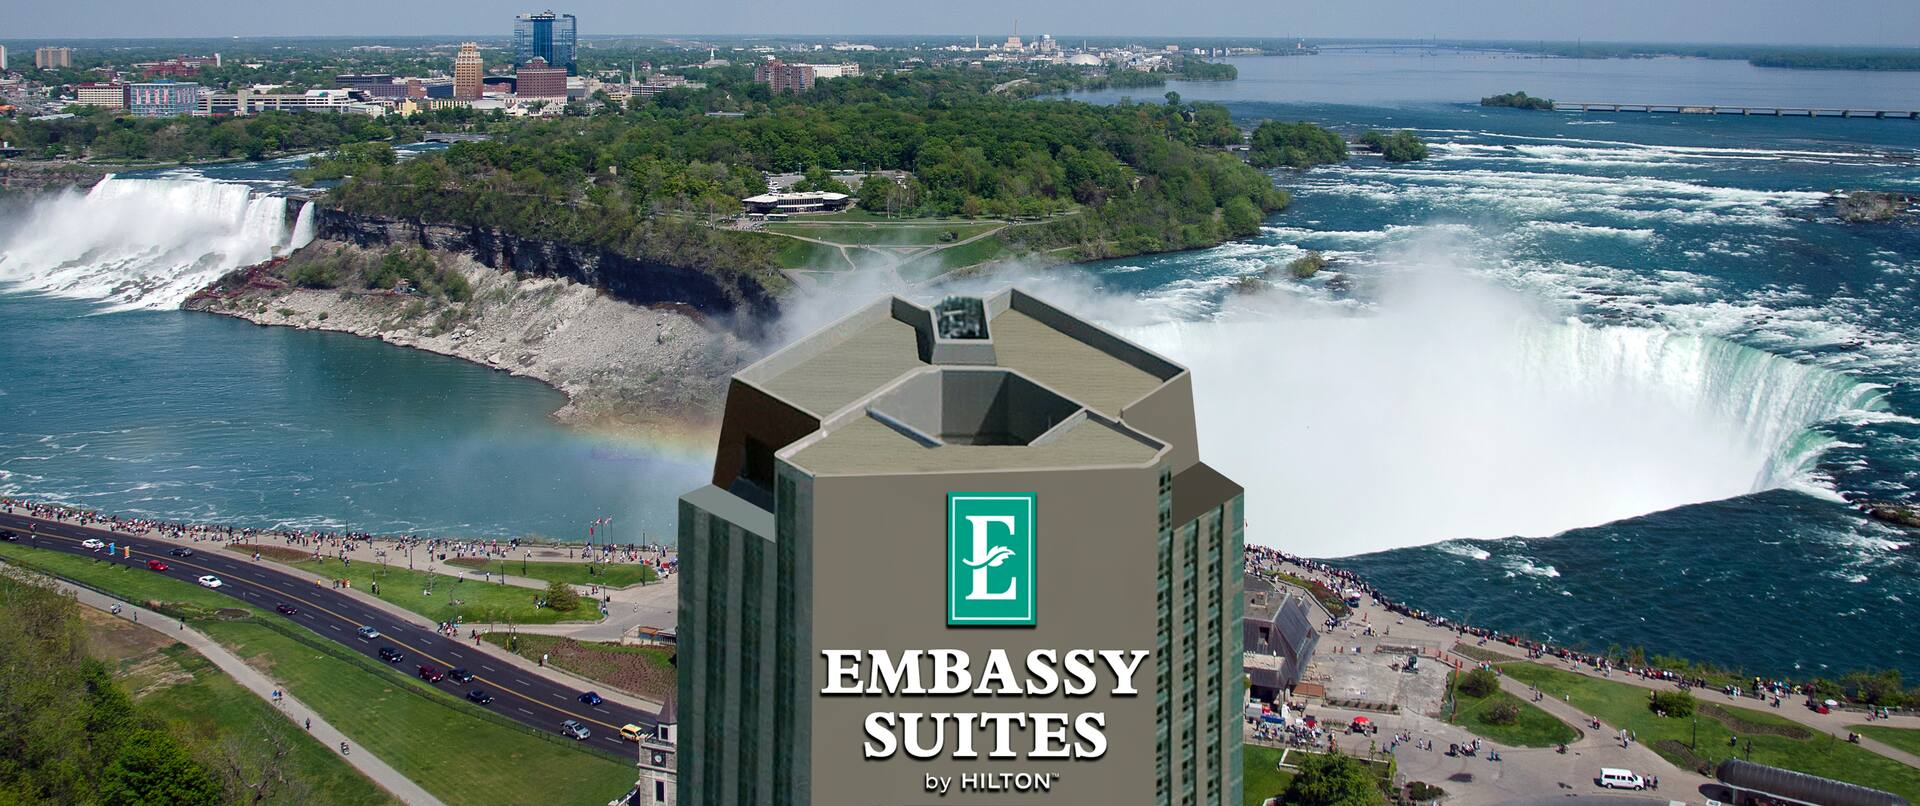 Extérieur de l'hôtel Embassy Suites avec vue sur les chutes du Niagara